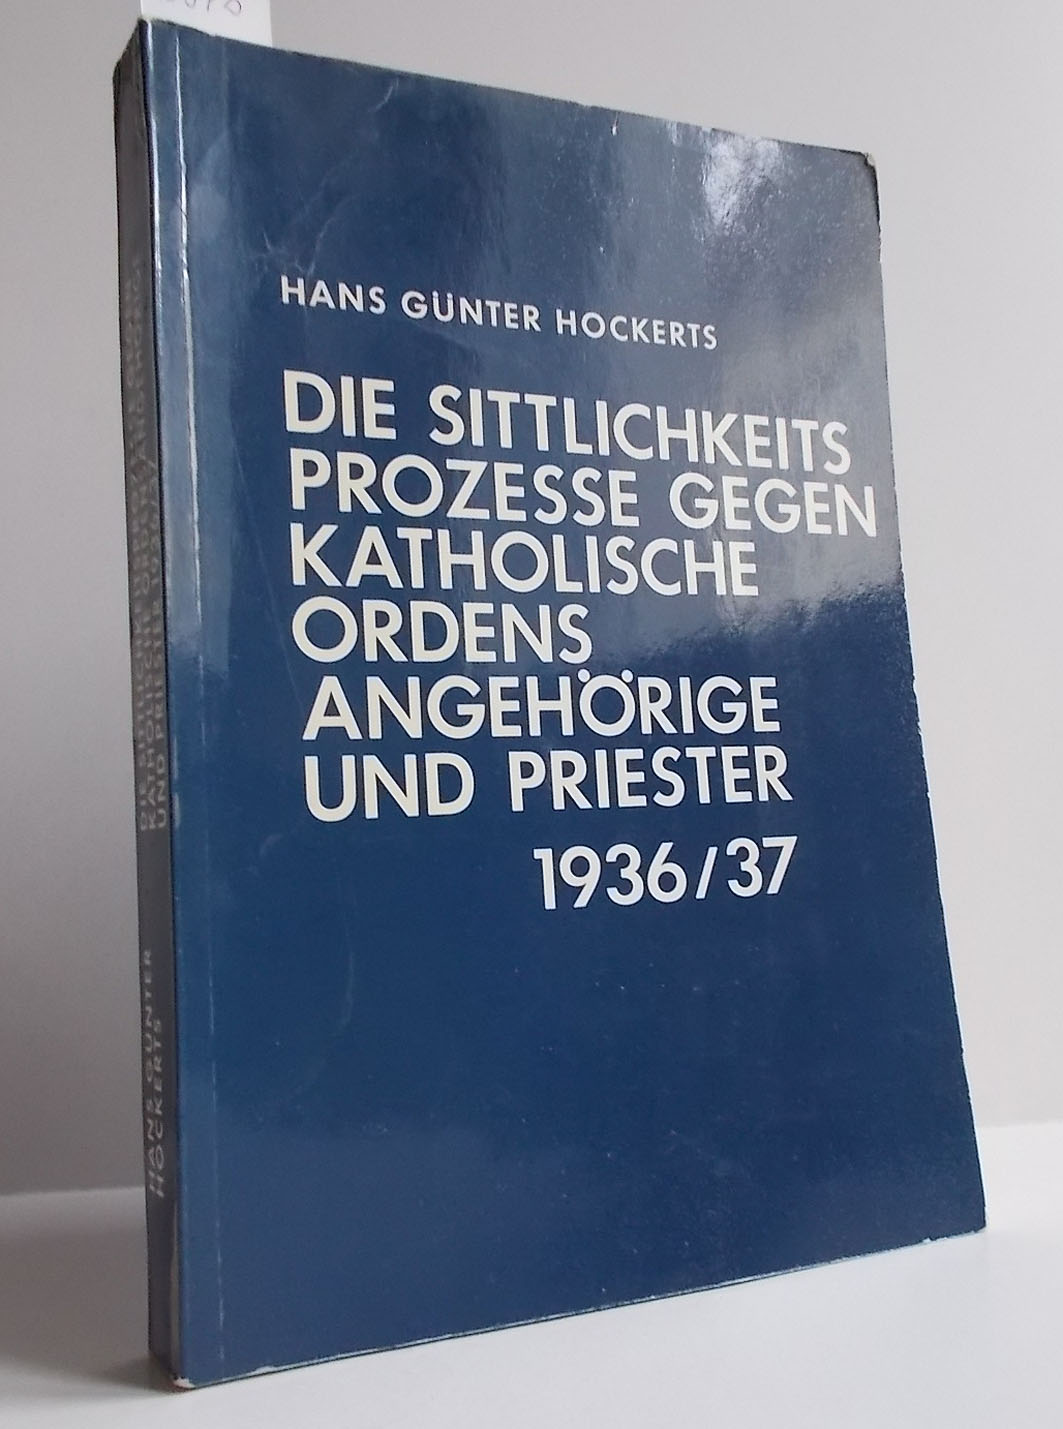 Die Sittlichkeitsprozesse gegen katholische Ordensangehörige und Priester 1936/37 - HOCKERS, HANS GÜNTER